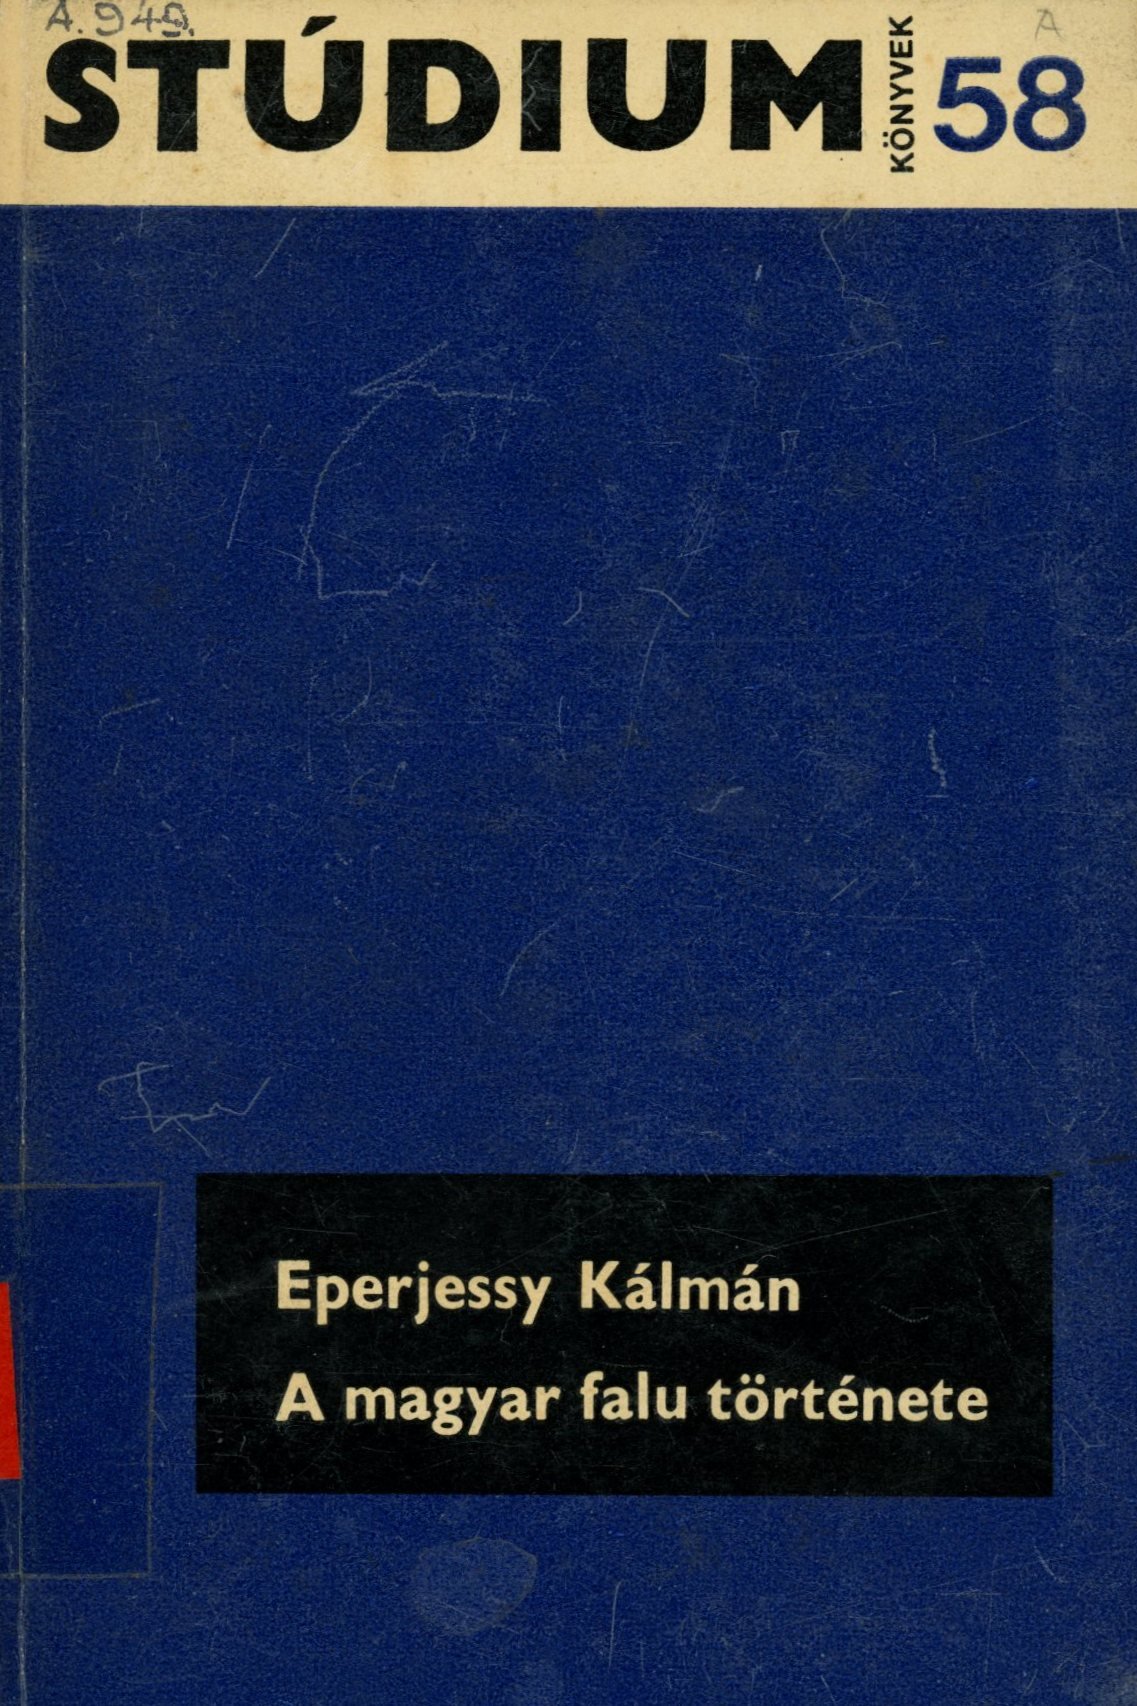 Eperjessy Kálmán (Erkel Ferenc Területi Múzeum, Gyula CC BY-NC-SA)